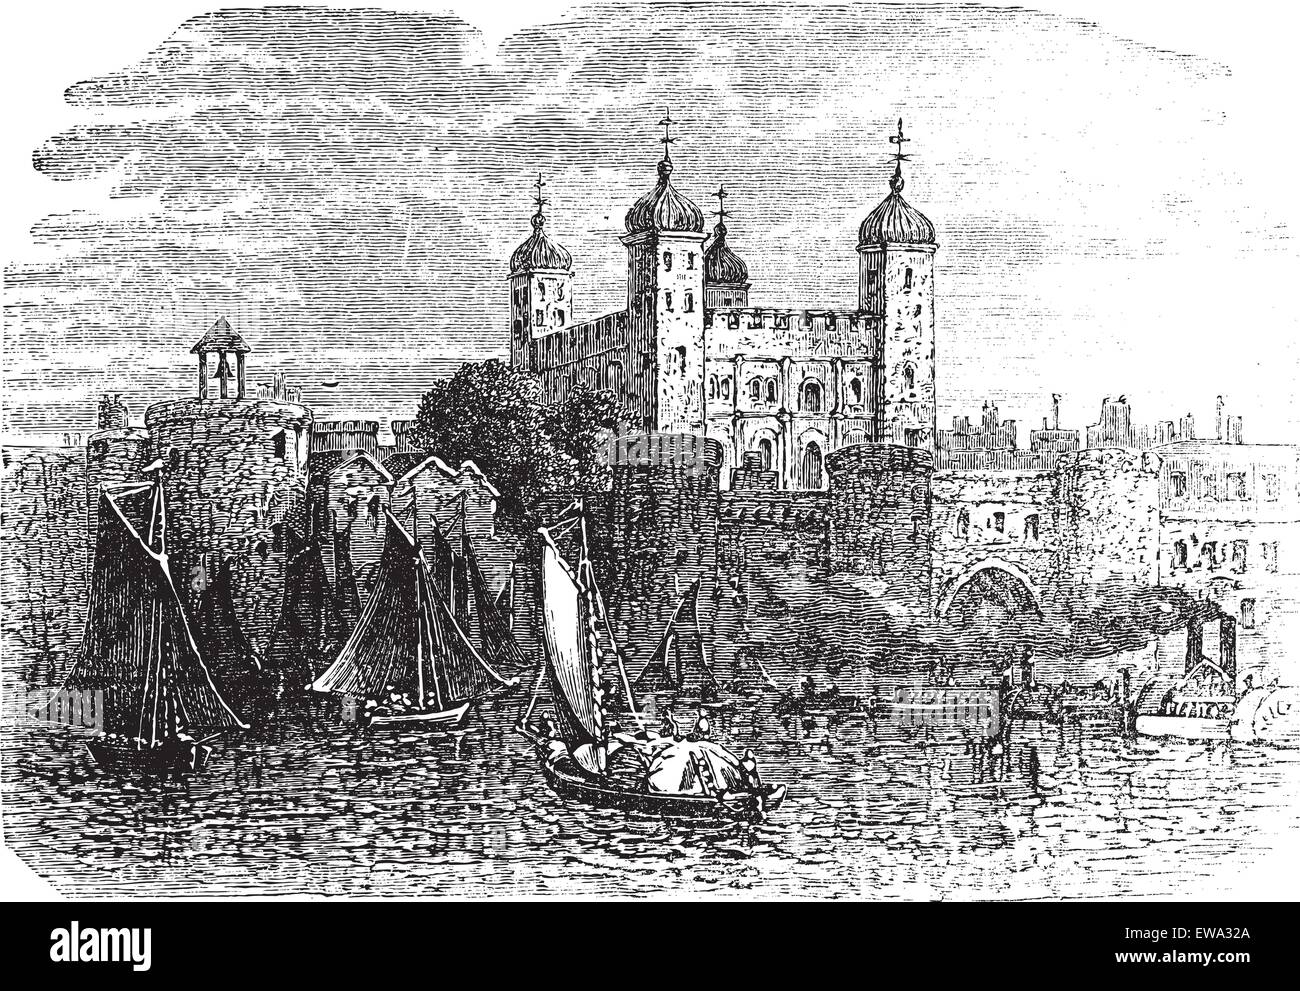 Tour de Londres ou le palais royal et forteresse à Londres, en Angleterre, pendant les années 1890, gravure d'époque. Vieille illustration gravée de La Tour de Londres avec des navires en mouvement à l'avant. Illustration de Vecteur